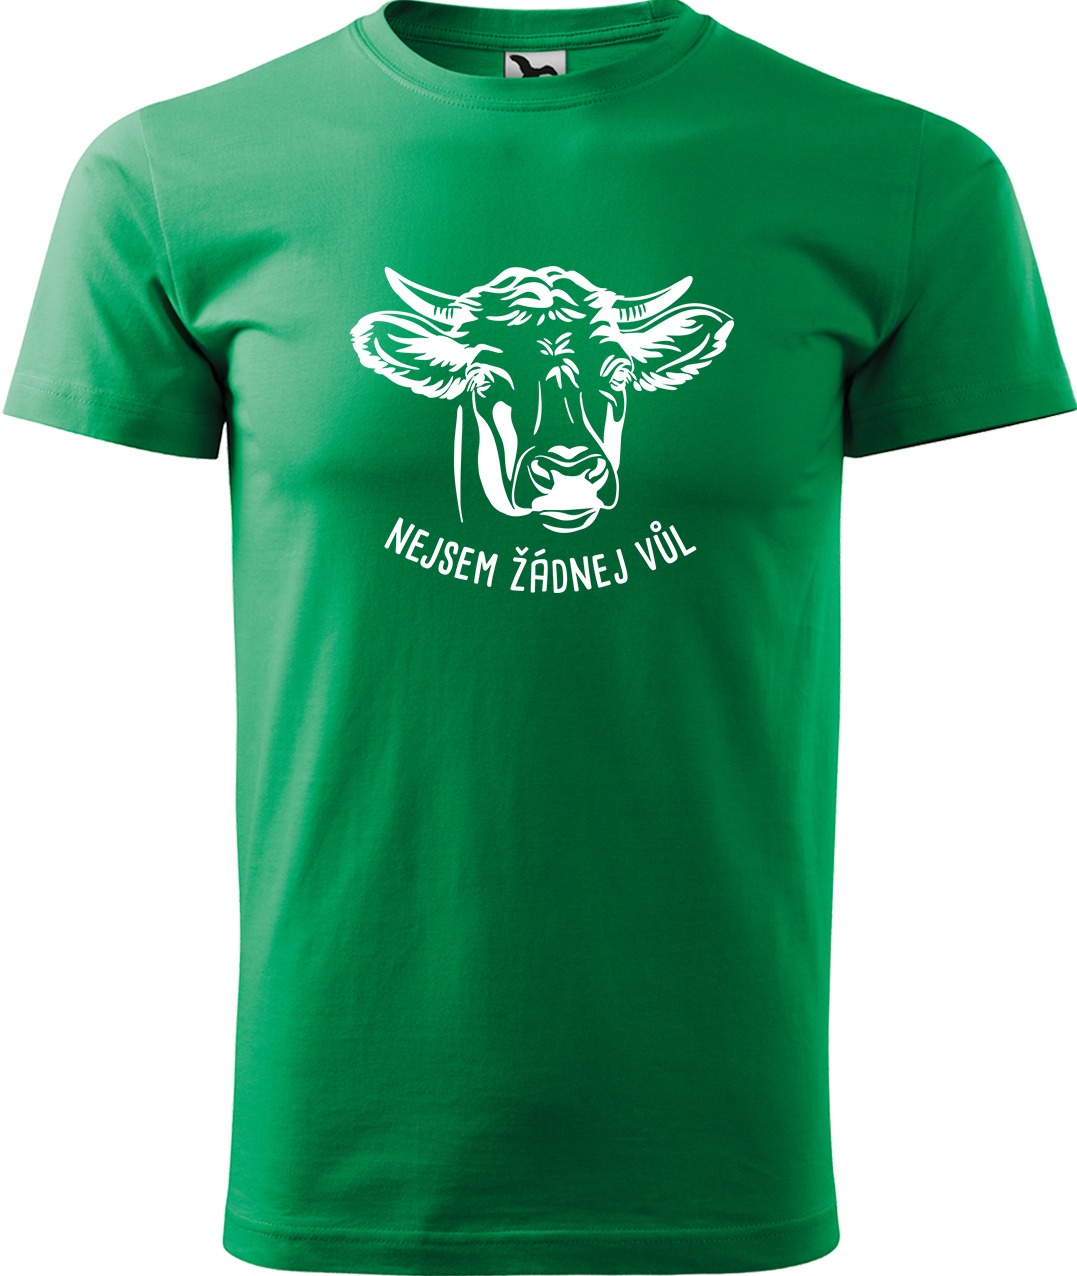 Pánské tričko s krávou - Nejsem žádnej vůl Velikost: M, Barva: Středně zelená (16), Střih: pánský